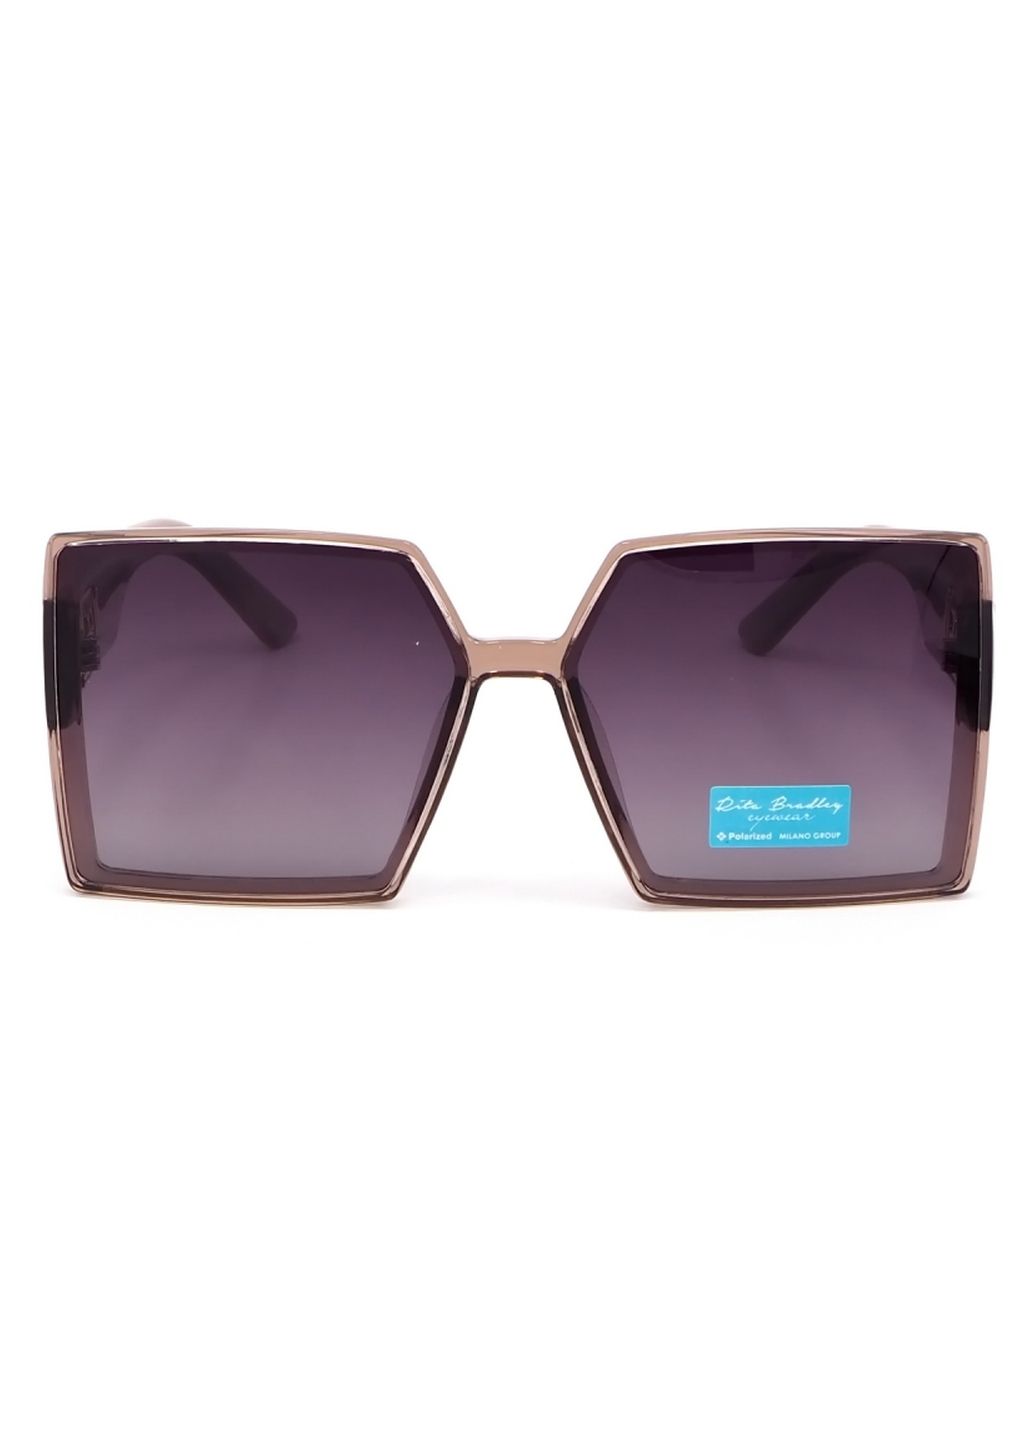 Купить Женские солнцезащитные очки Rita Bradley с поляризацией RB731 112081 в интернет-магазине